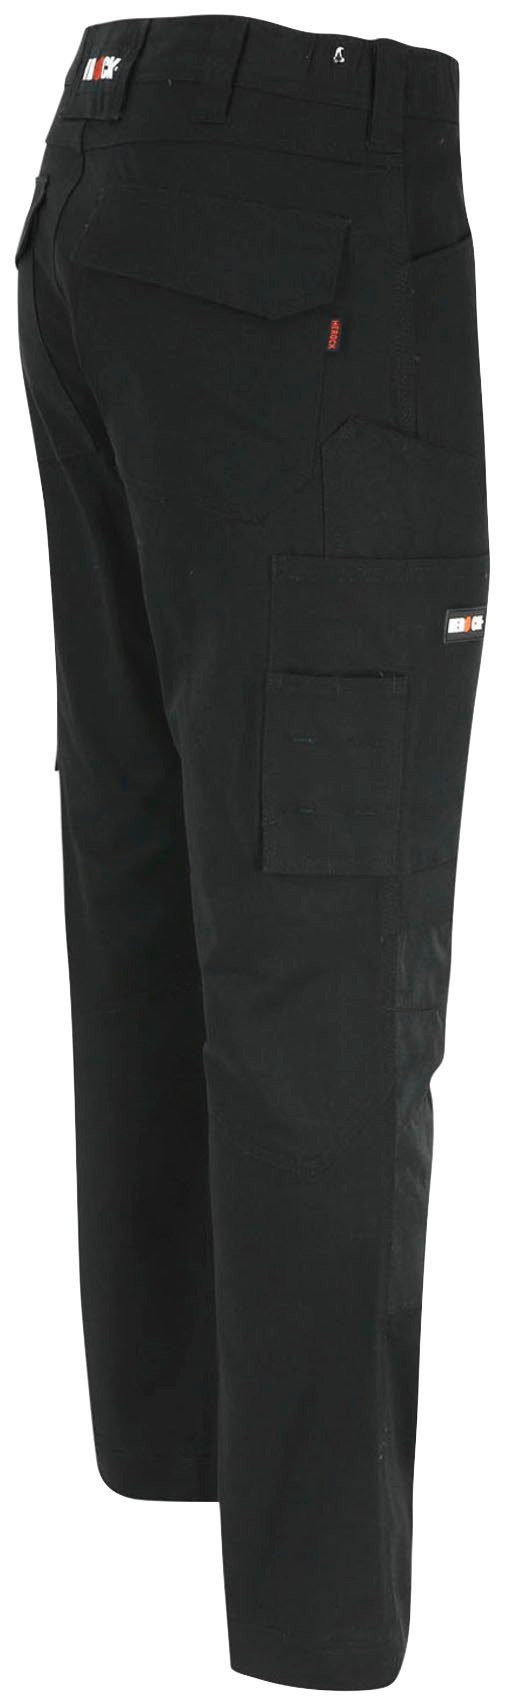 2-Wege-Stretch, Slim Multi-Pocket, Arbeitshose schwarz Fit Herock wasserabweisend DERO Passform,